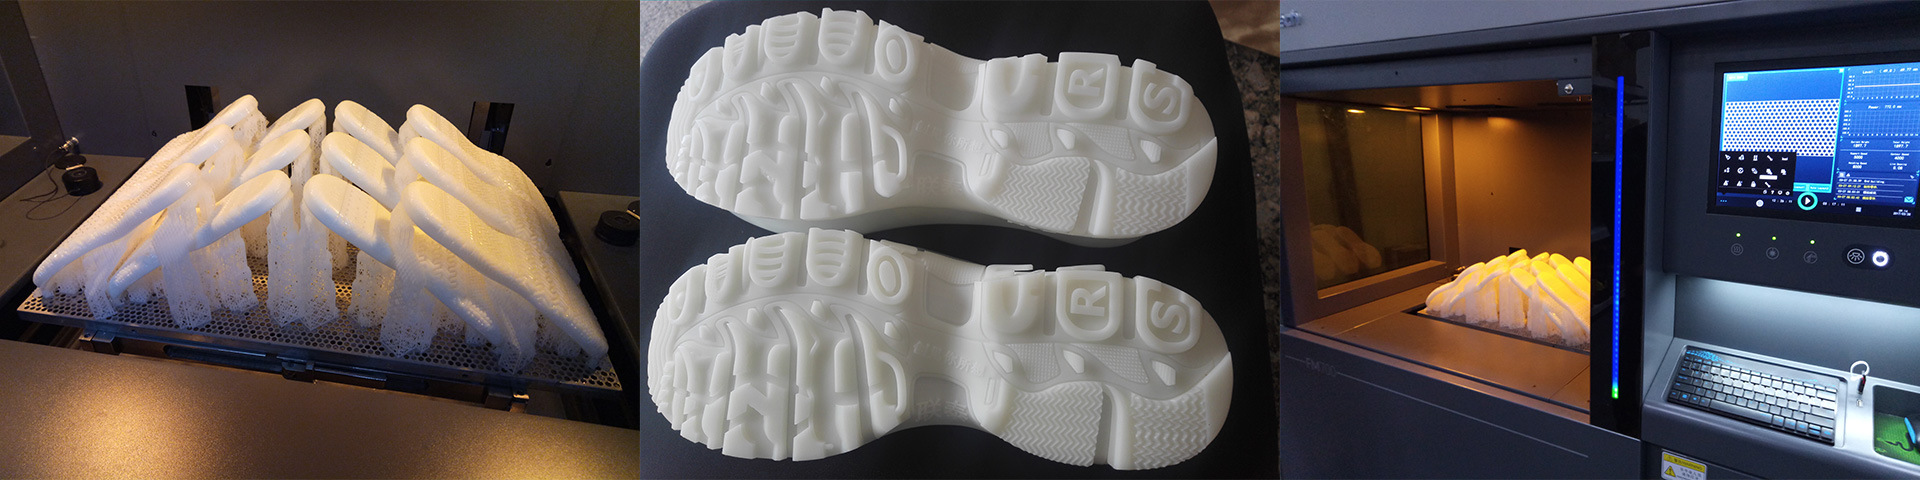 3D打印手板 鞋底 手板打样 鞋子模型 设计 制鞋 产品原型